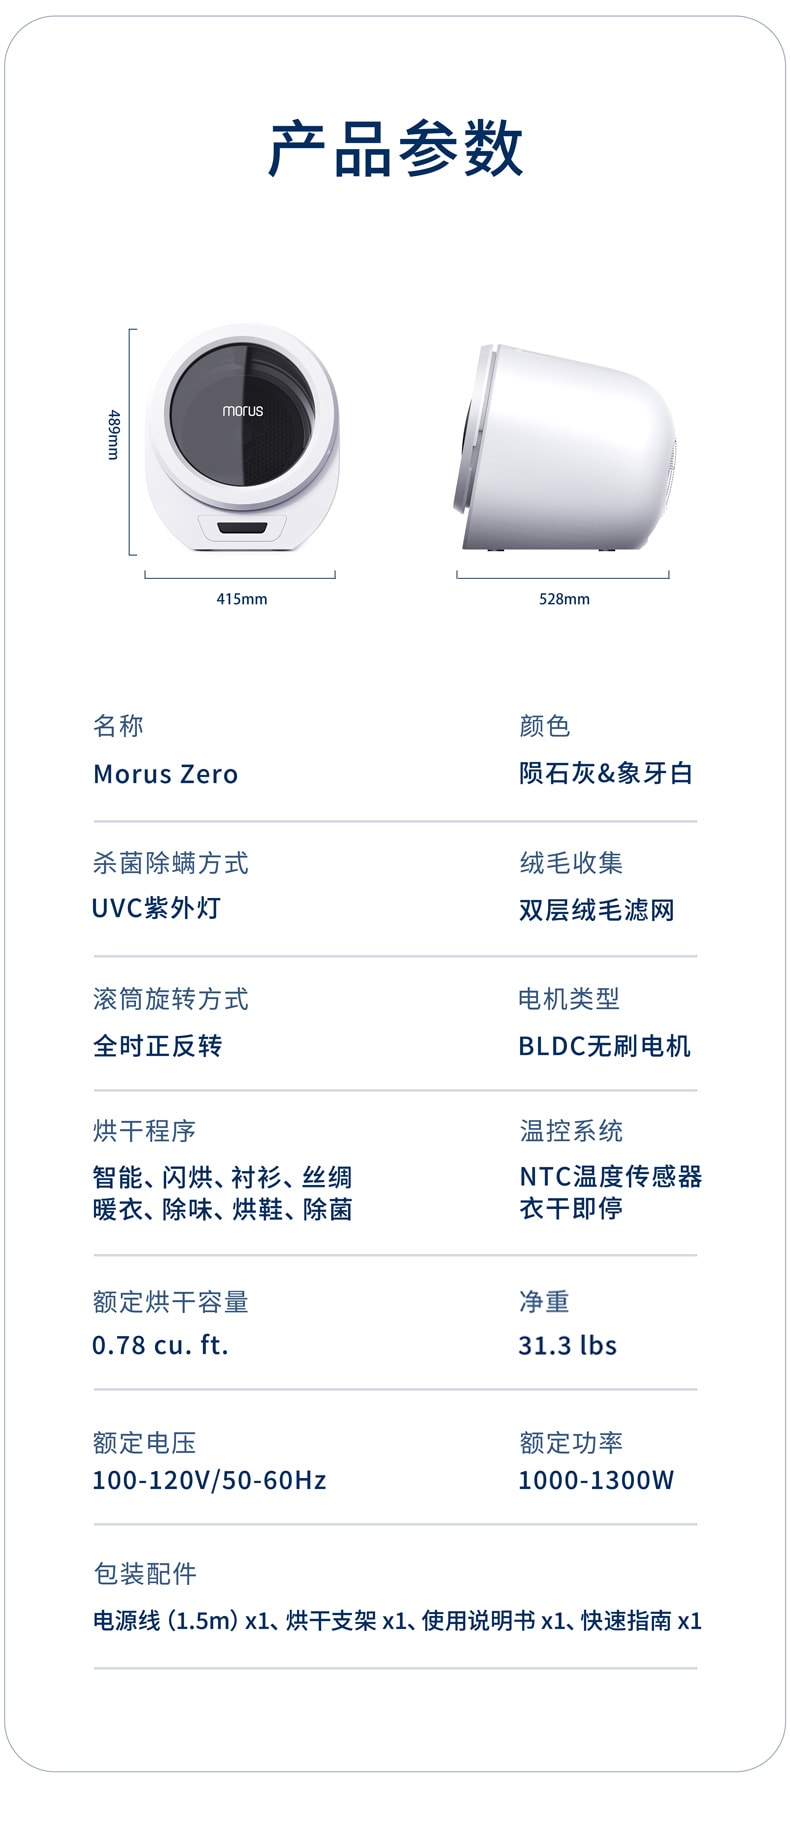 【美仓直邮】Morus Zero 超便携公寓房车干衣机 8大自定义烘干模式 象牙白 110-120V 0.8 cu.ft.